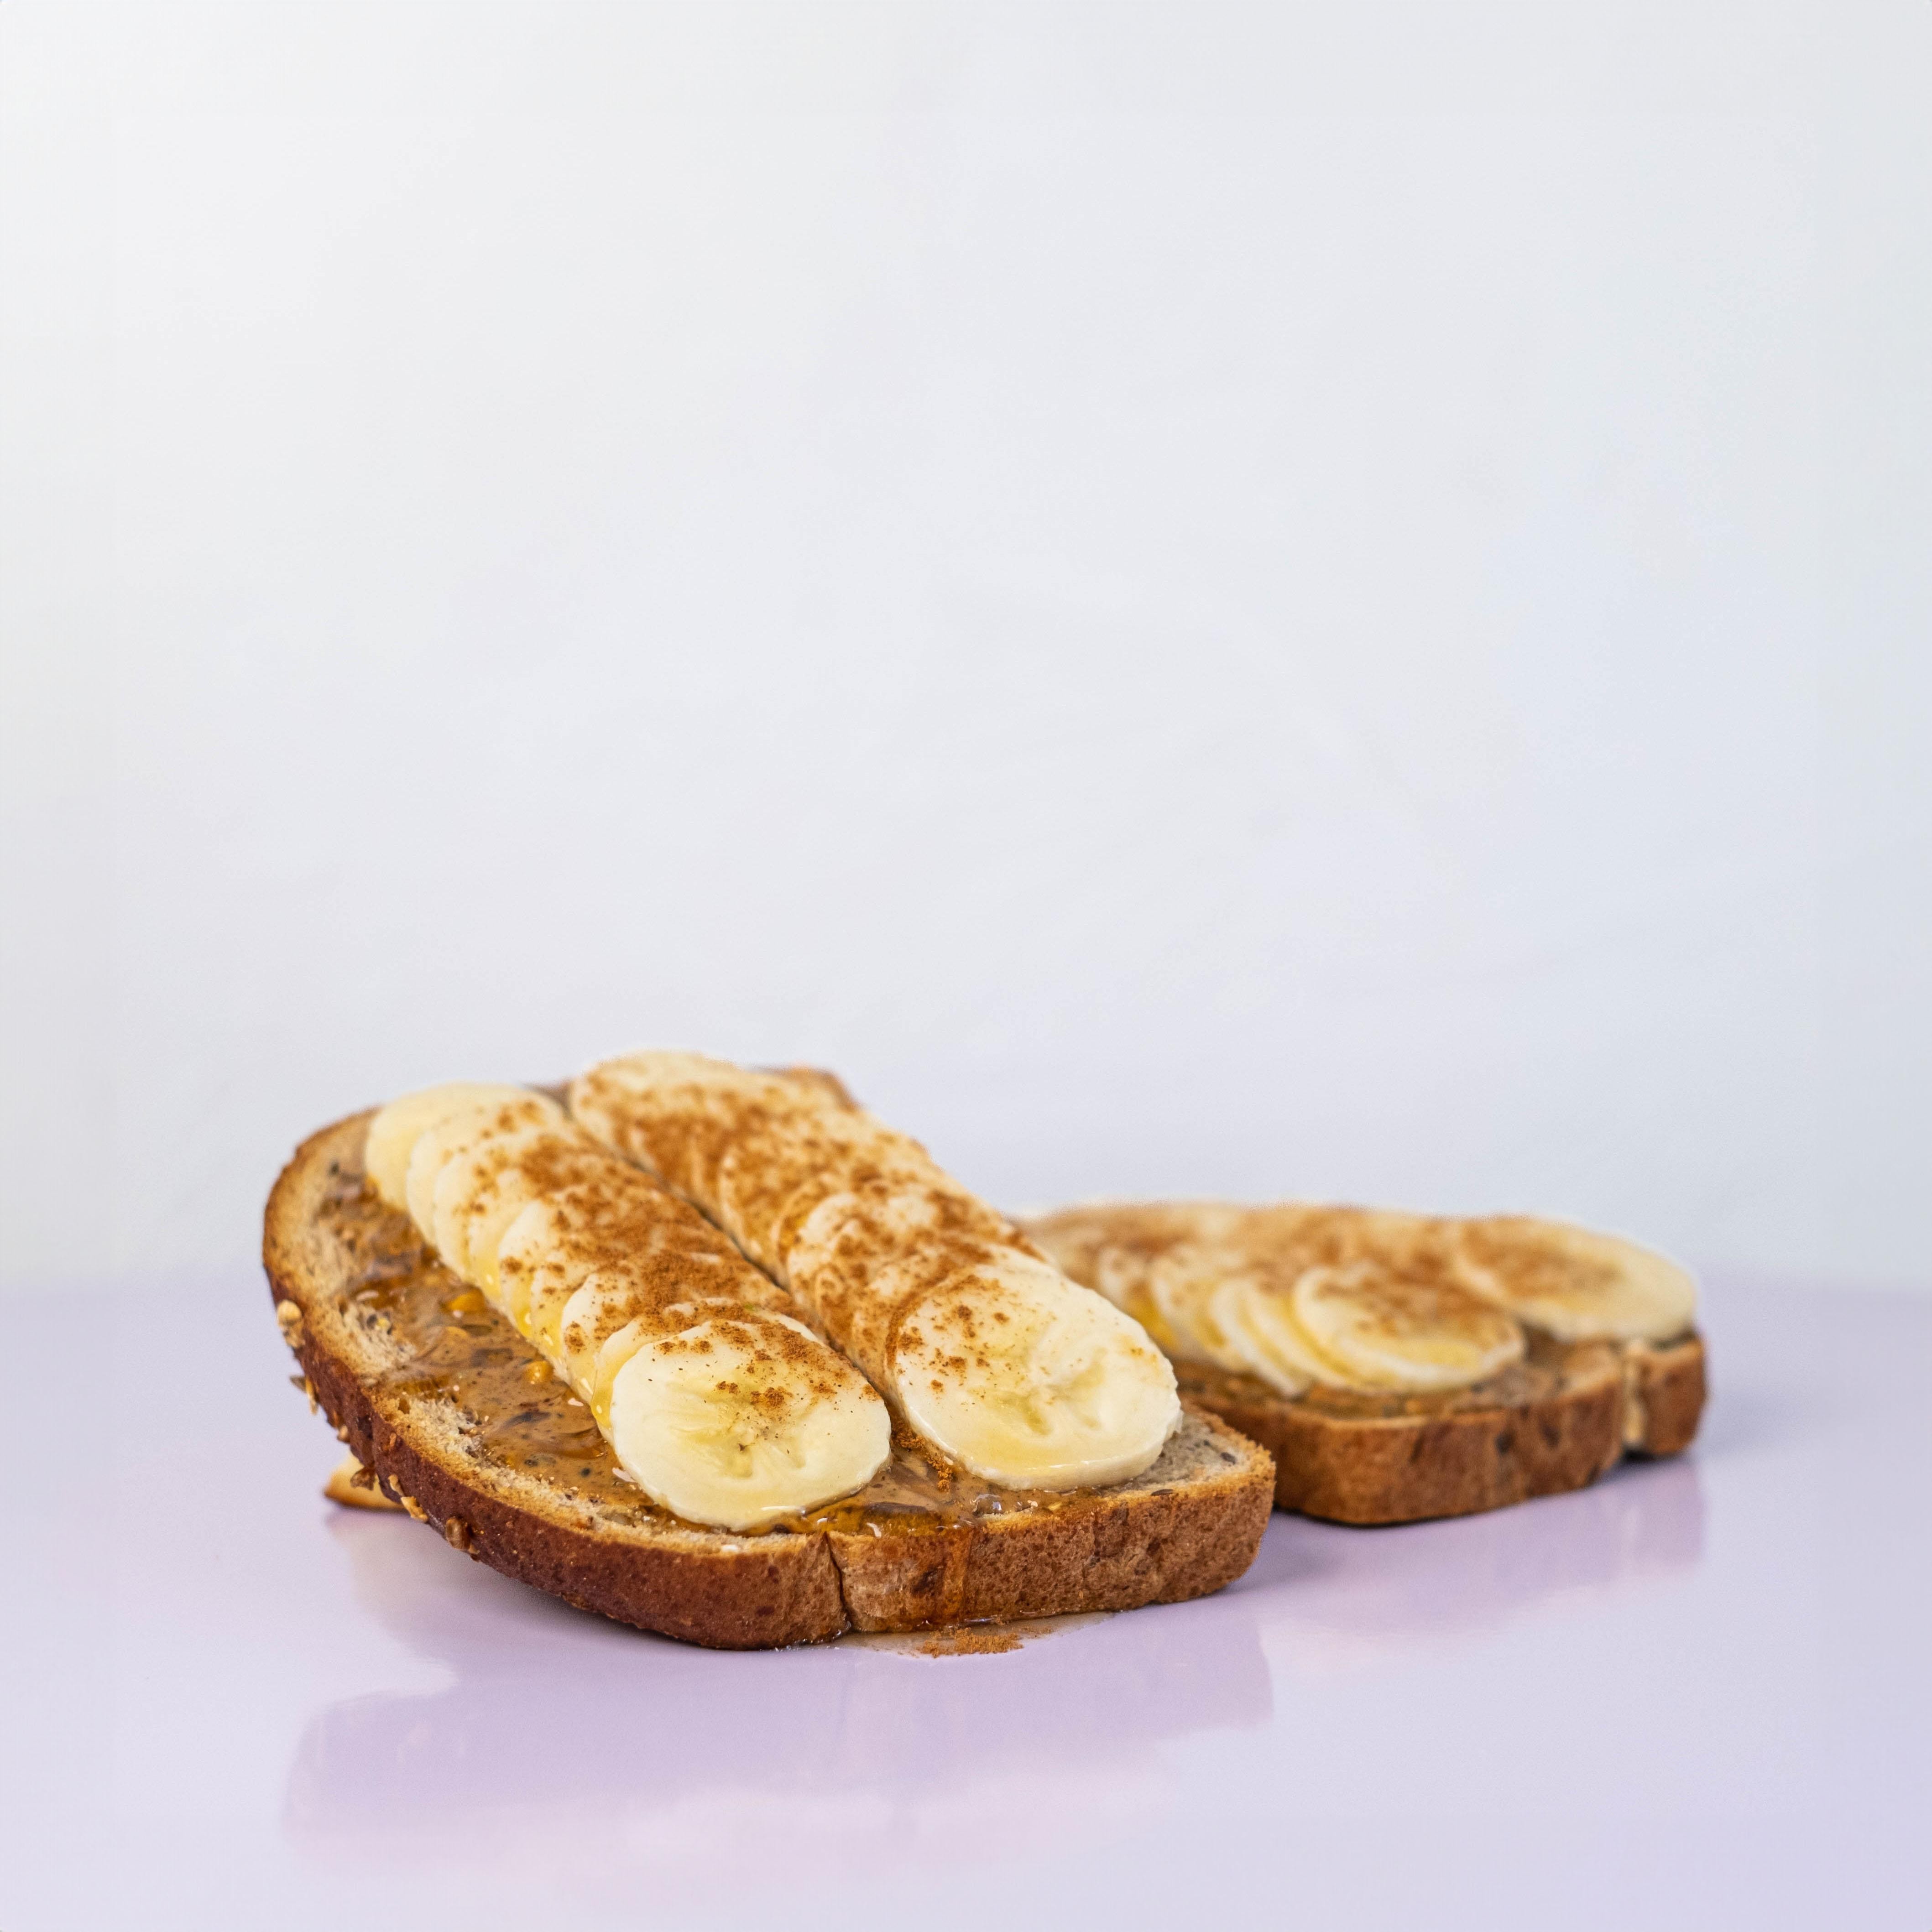 Peanut-Butter-Honey-Banana Toast